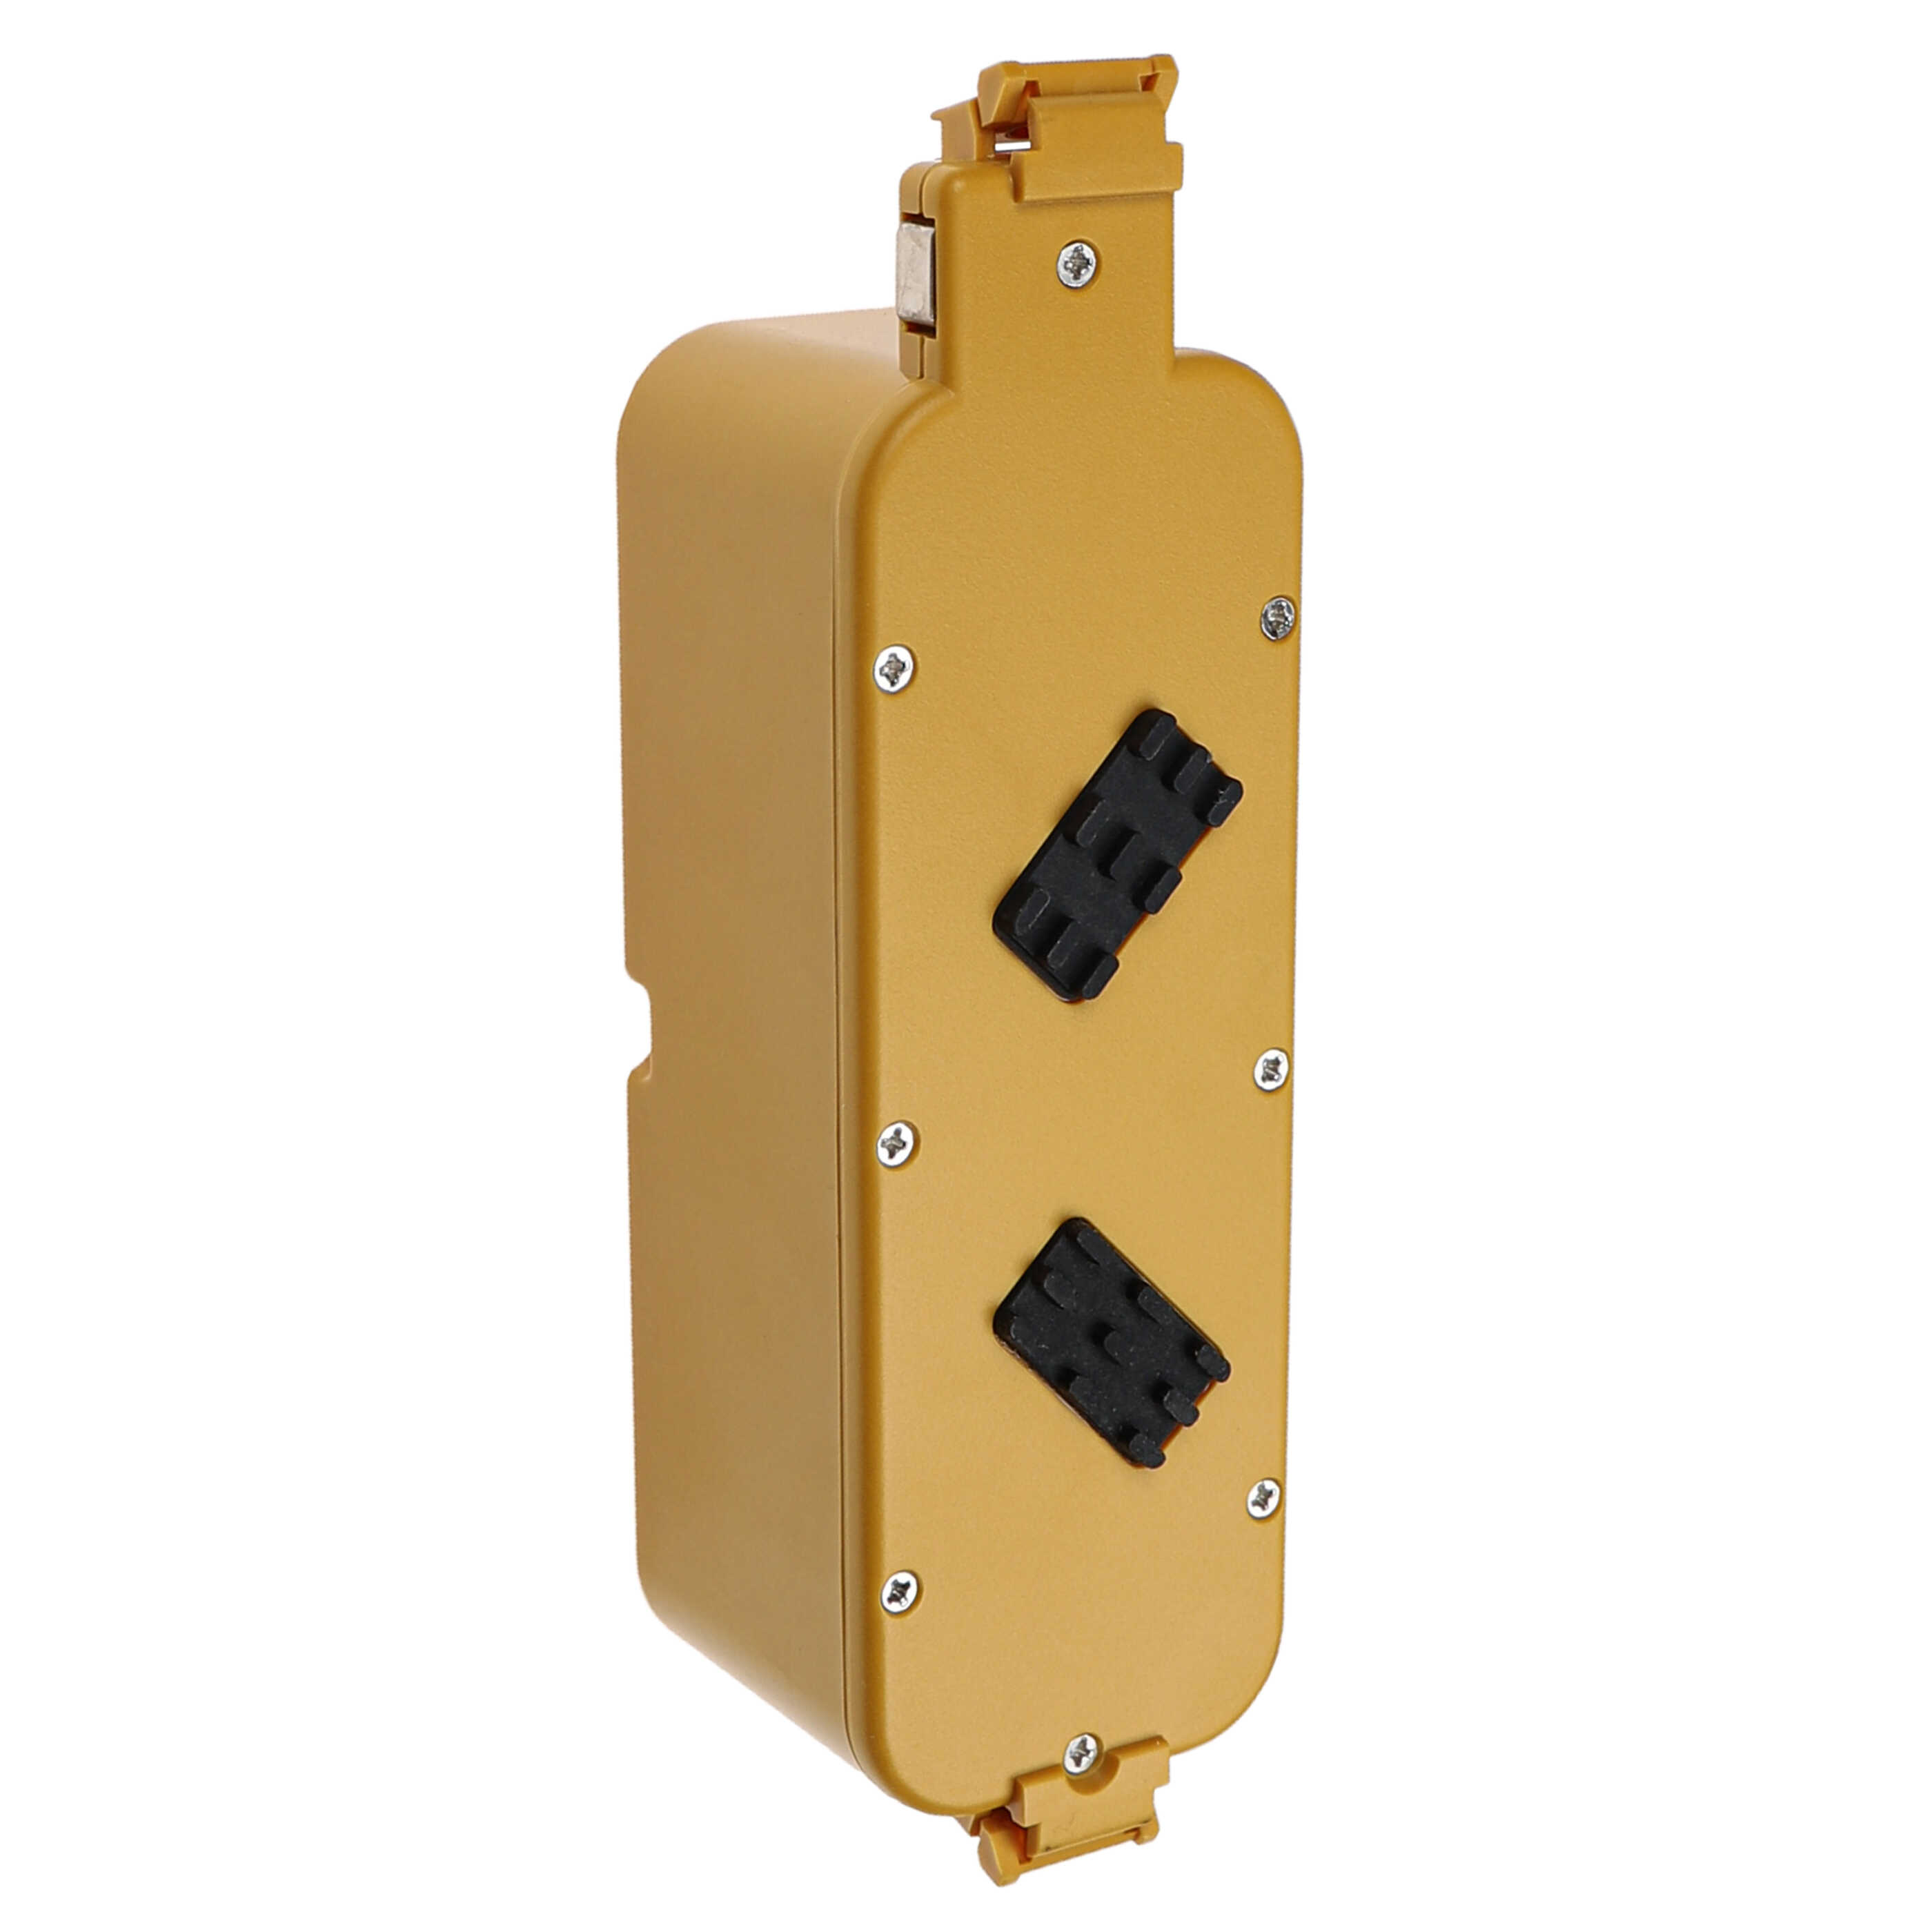 Batteria sostituisce APS 4905, NC-3493-919, 11700, 17373 per aspirapolvere iRobot - 4500mAh 14,4V NiMH giallo